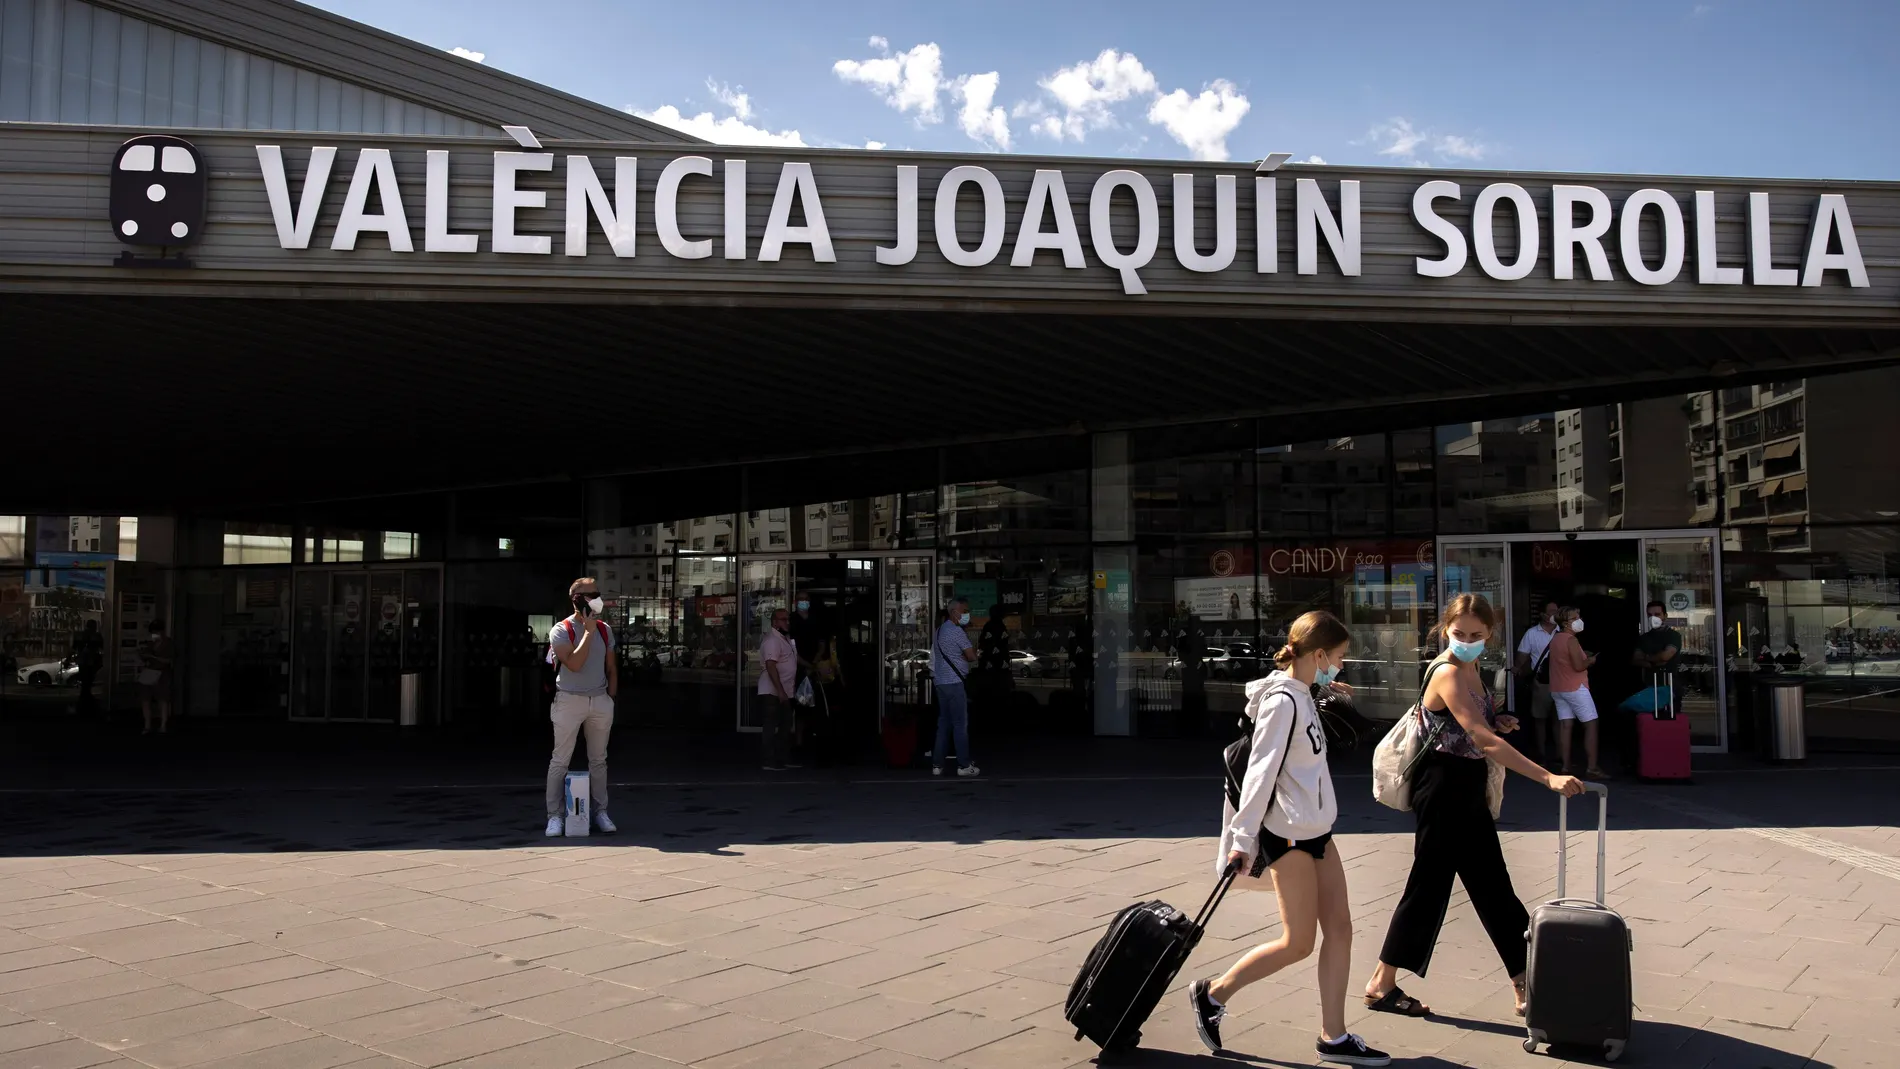 Dos personas transportan sus maletas a la salida de la estación de tren Joaquín Sorolla de València